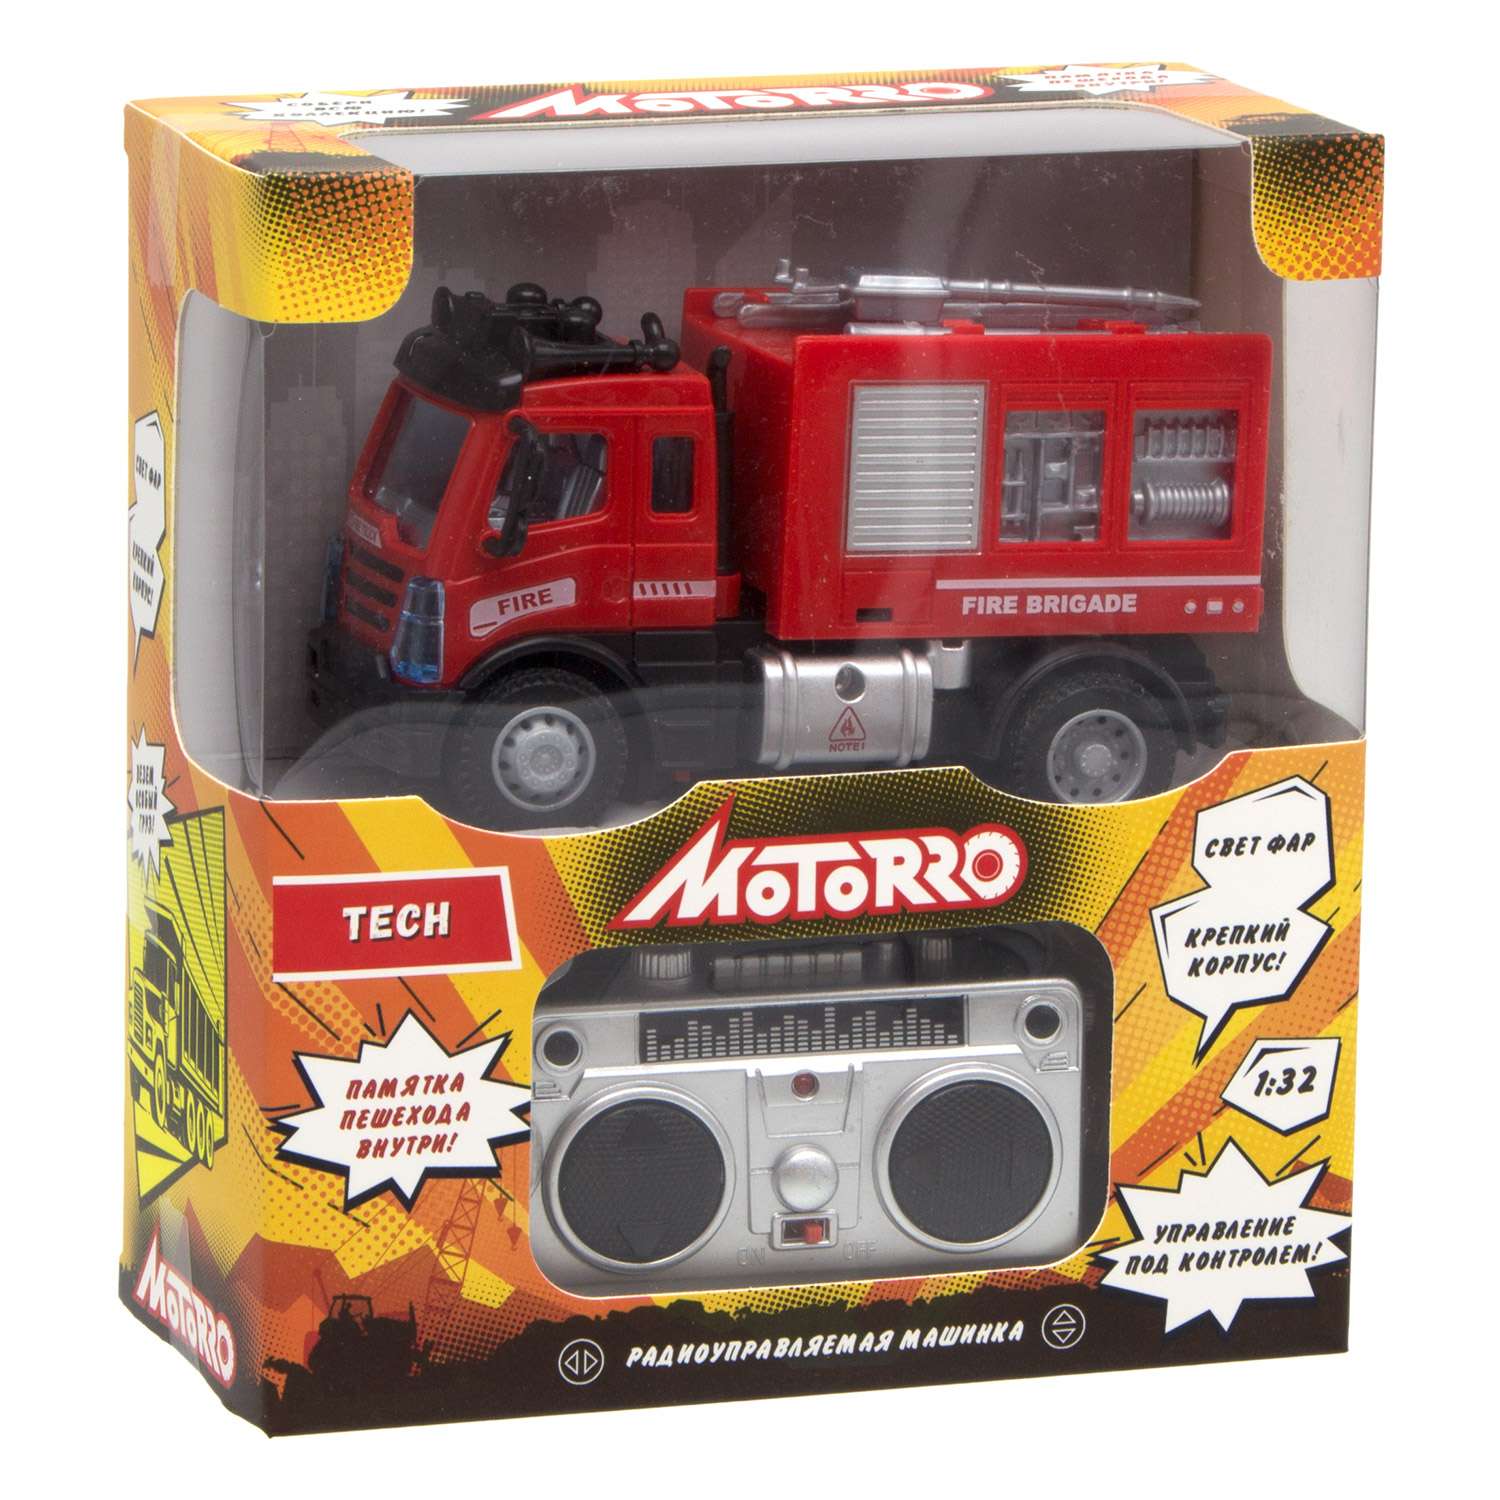 Машинка радиоуправляемая Motorro 1:32 со светом пожарная - фото 2